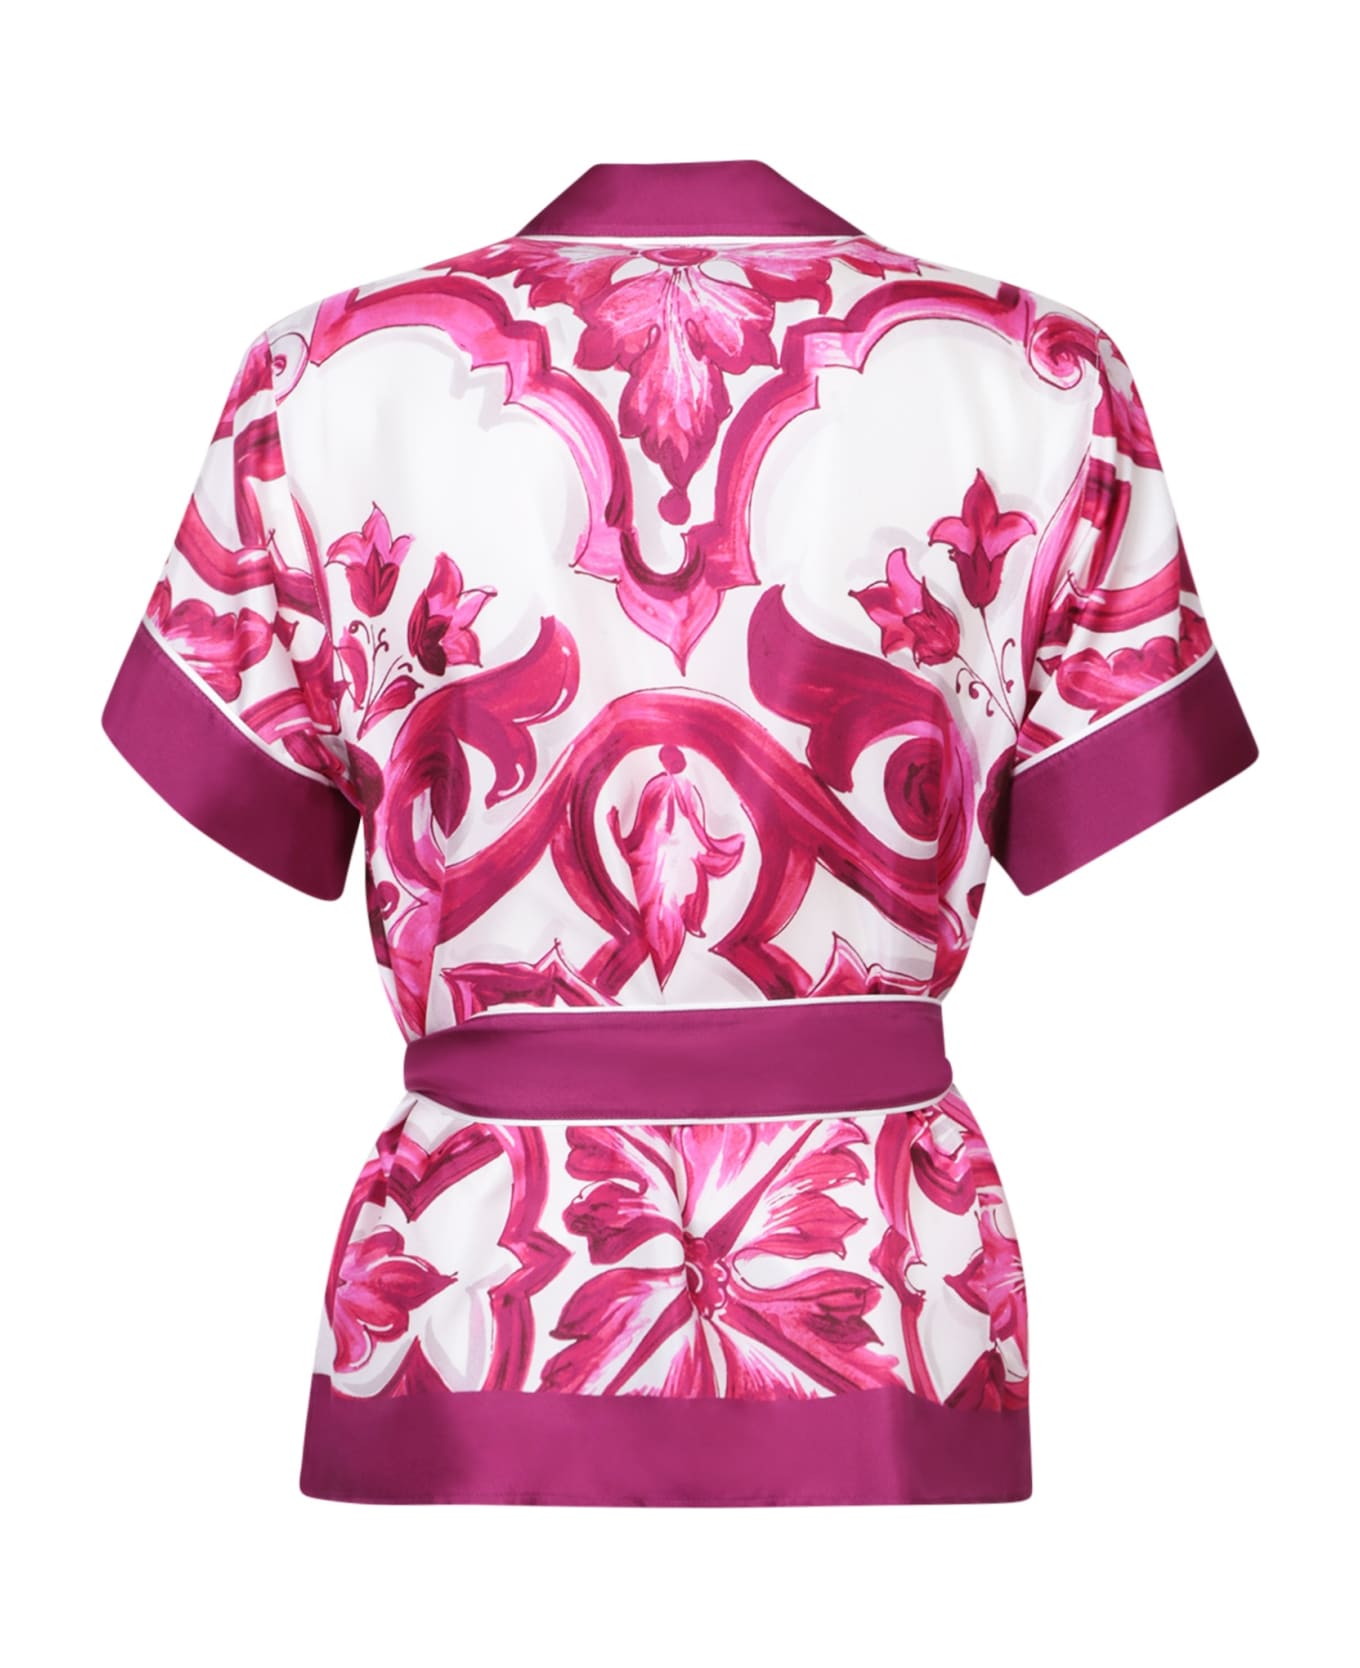 Dolce & Gabbana Tie-waist Printed Shirt - Pink パジャマ